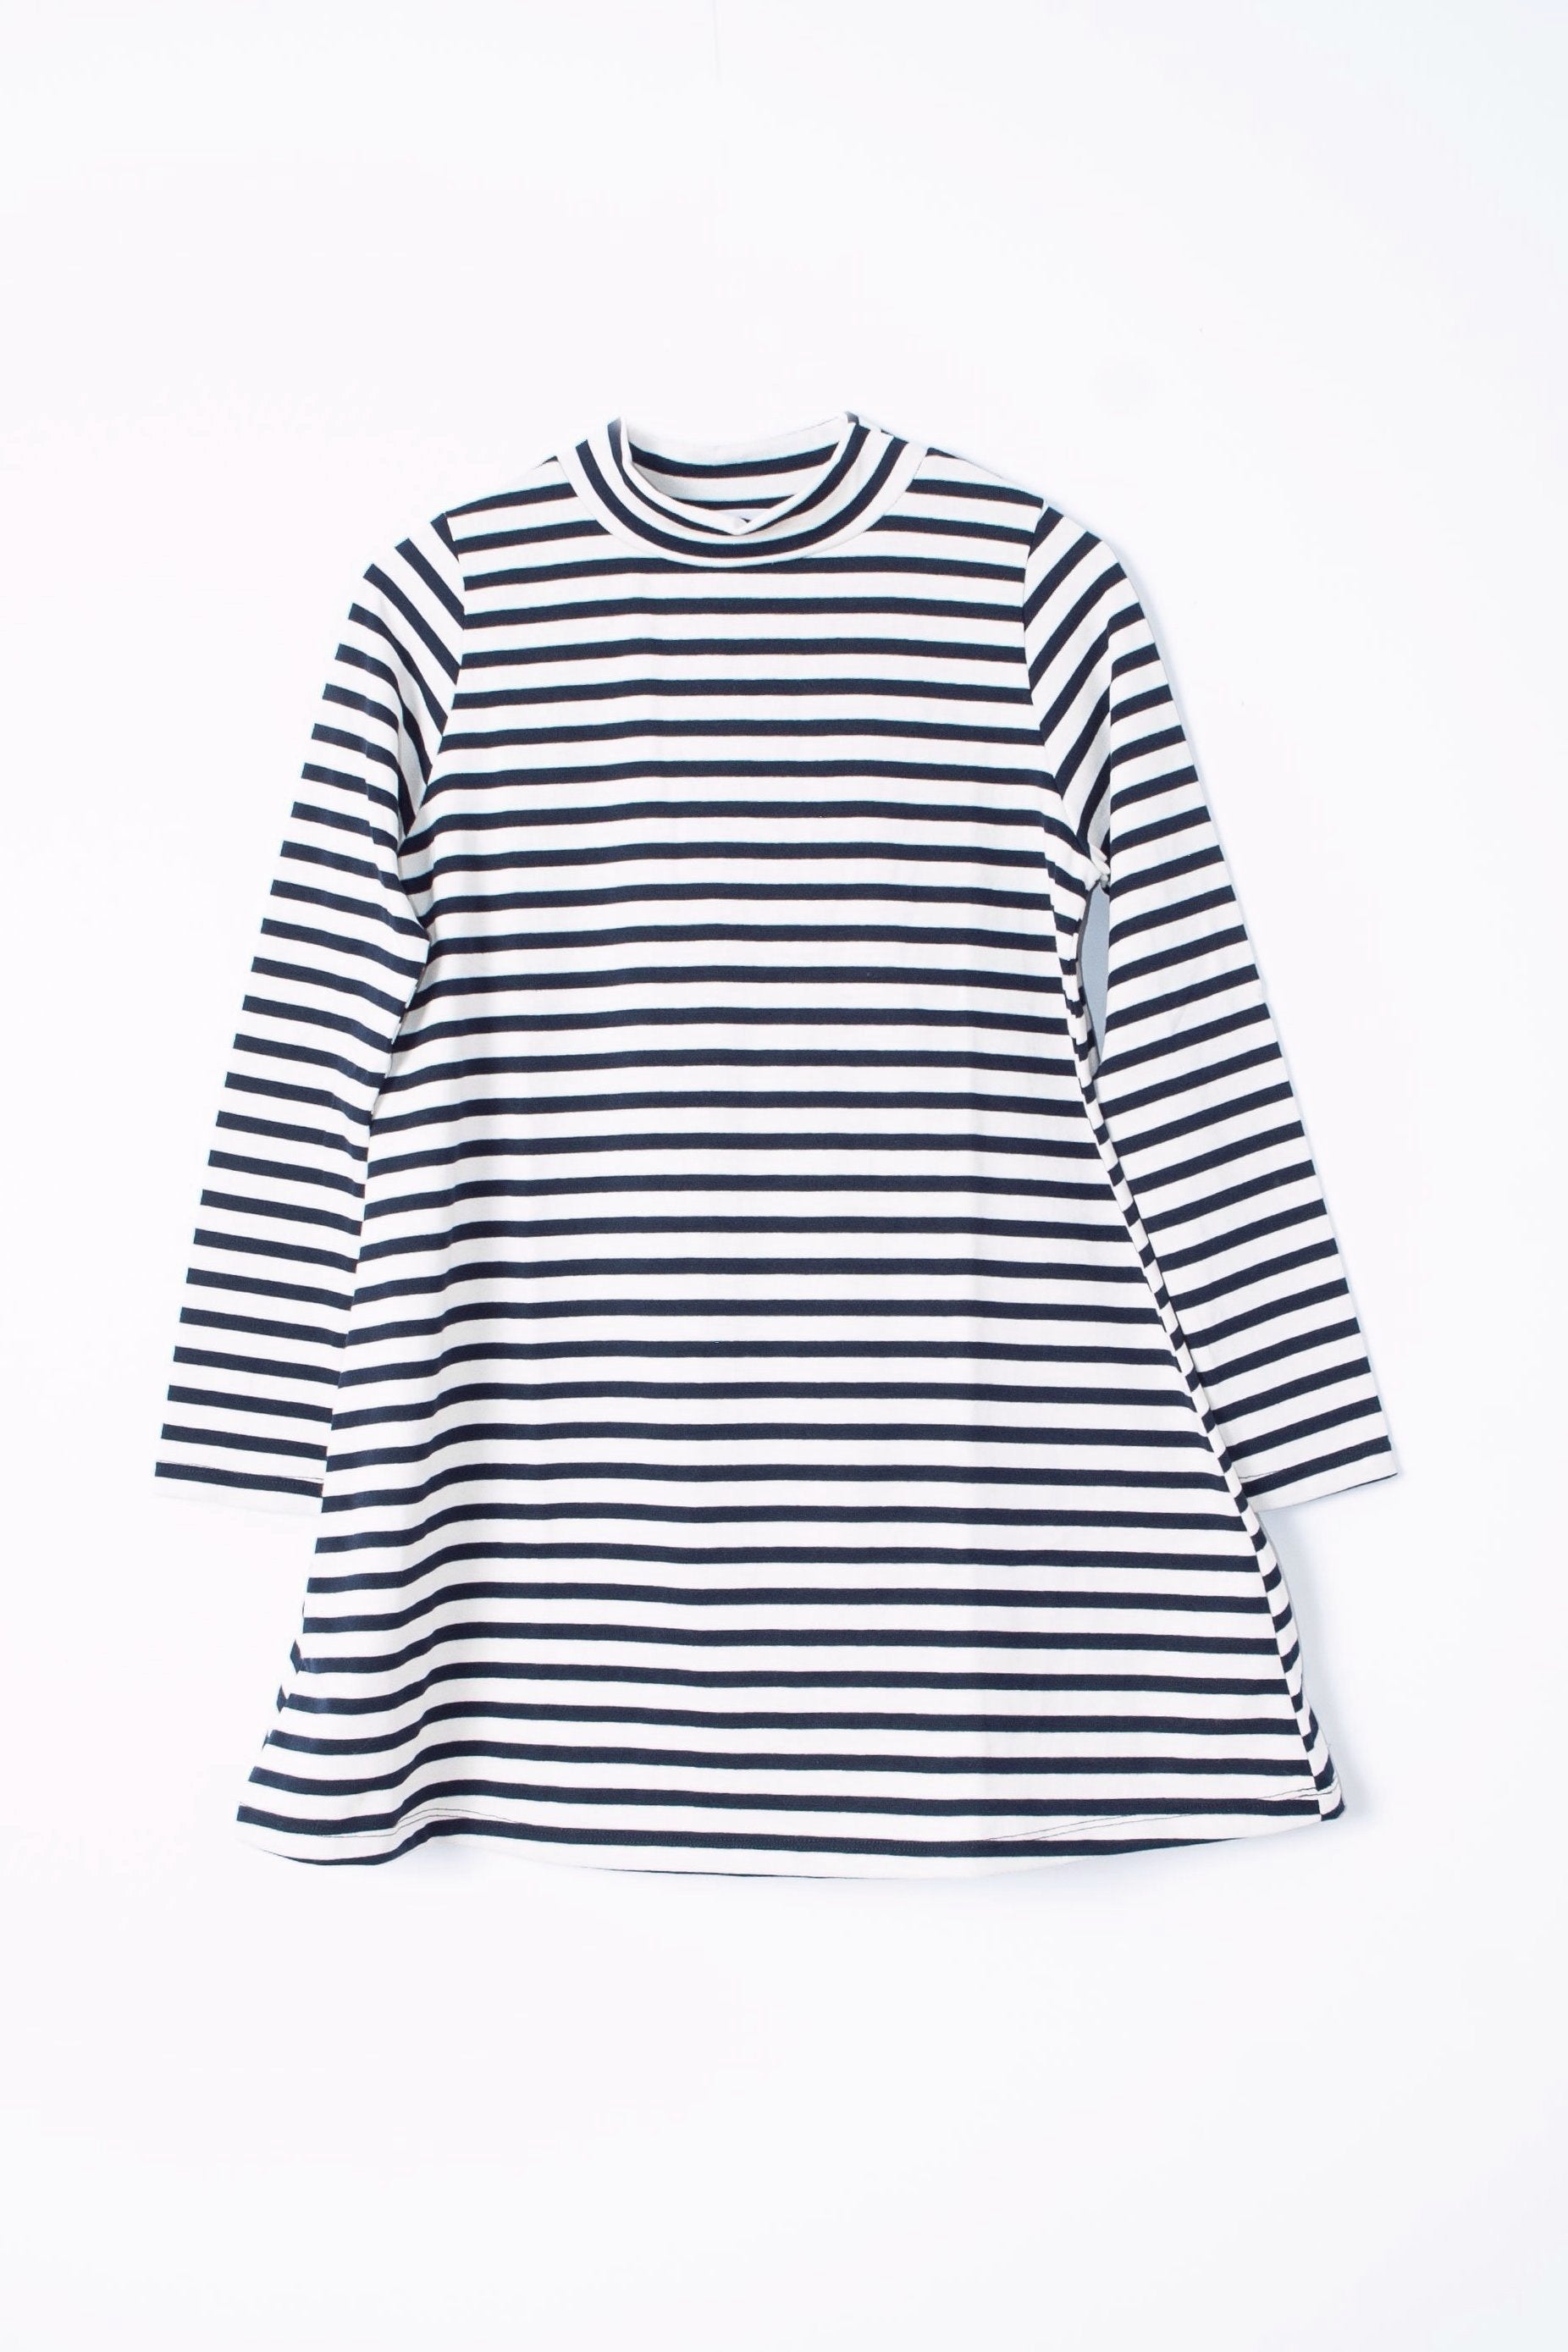 Franc Dress (Petite) - Sailor Stripes